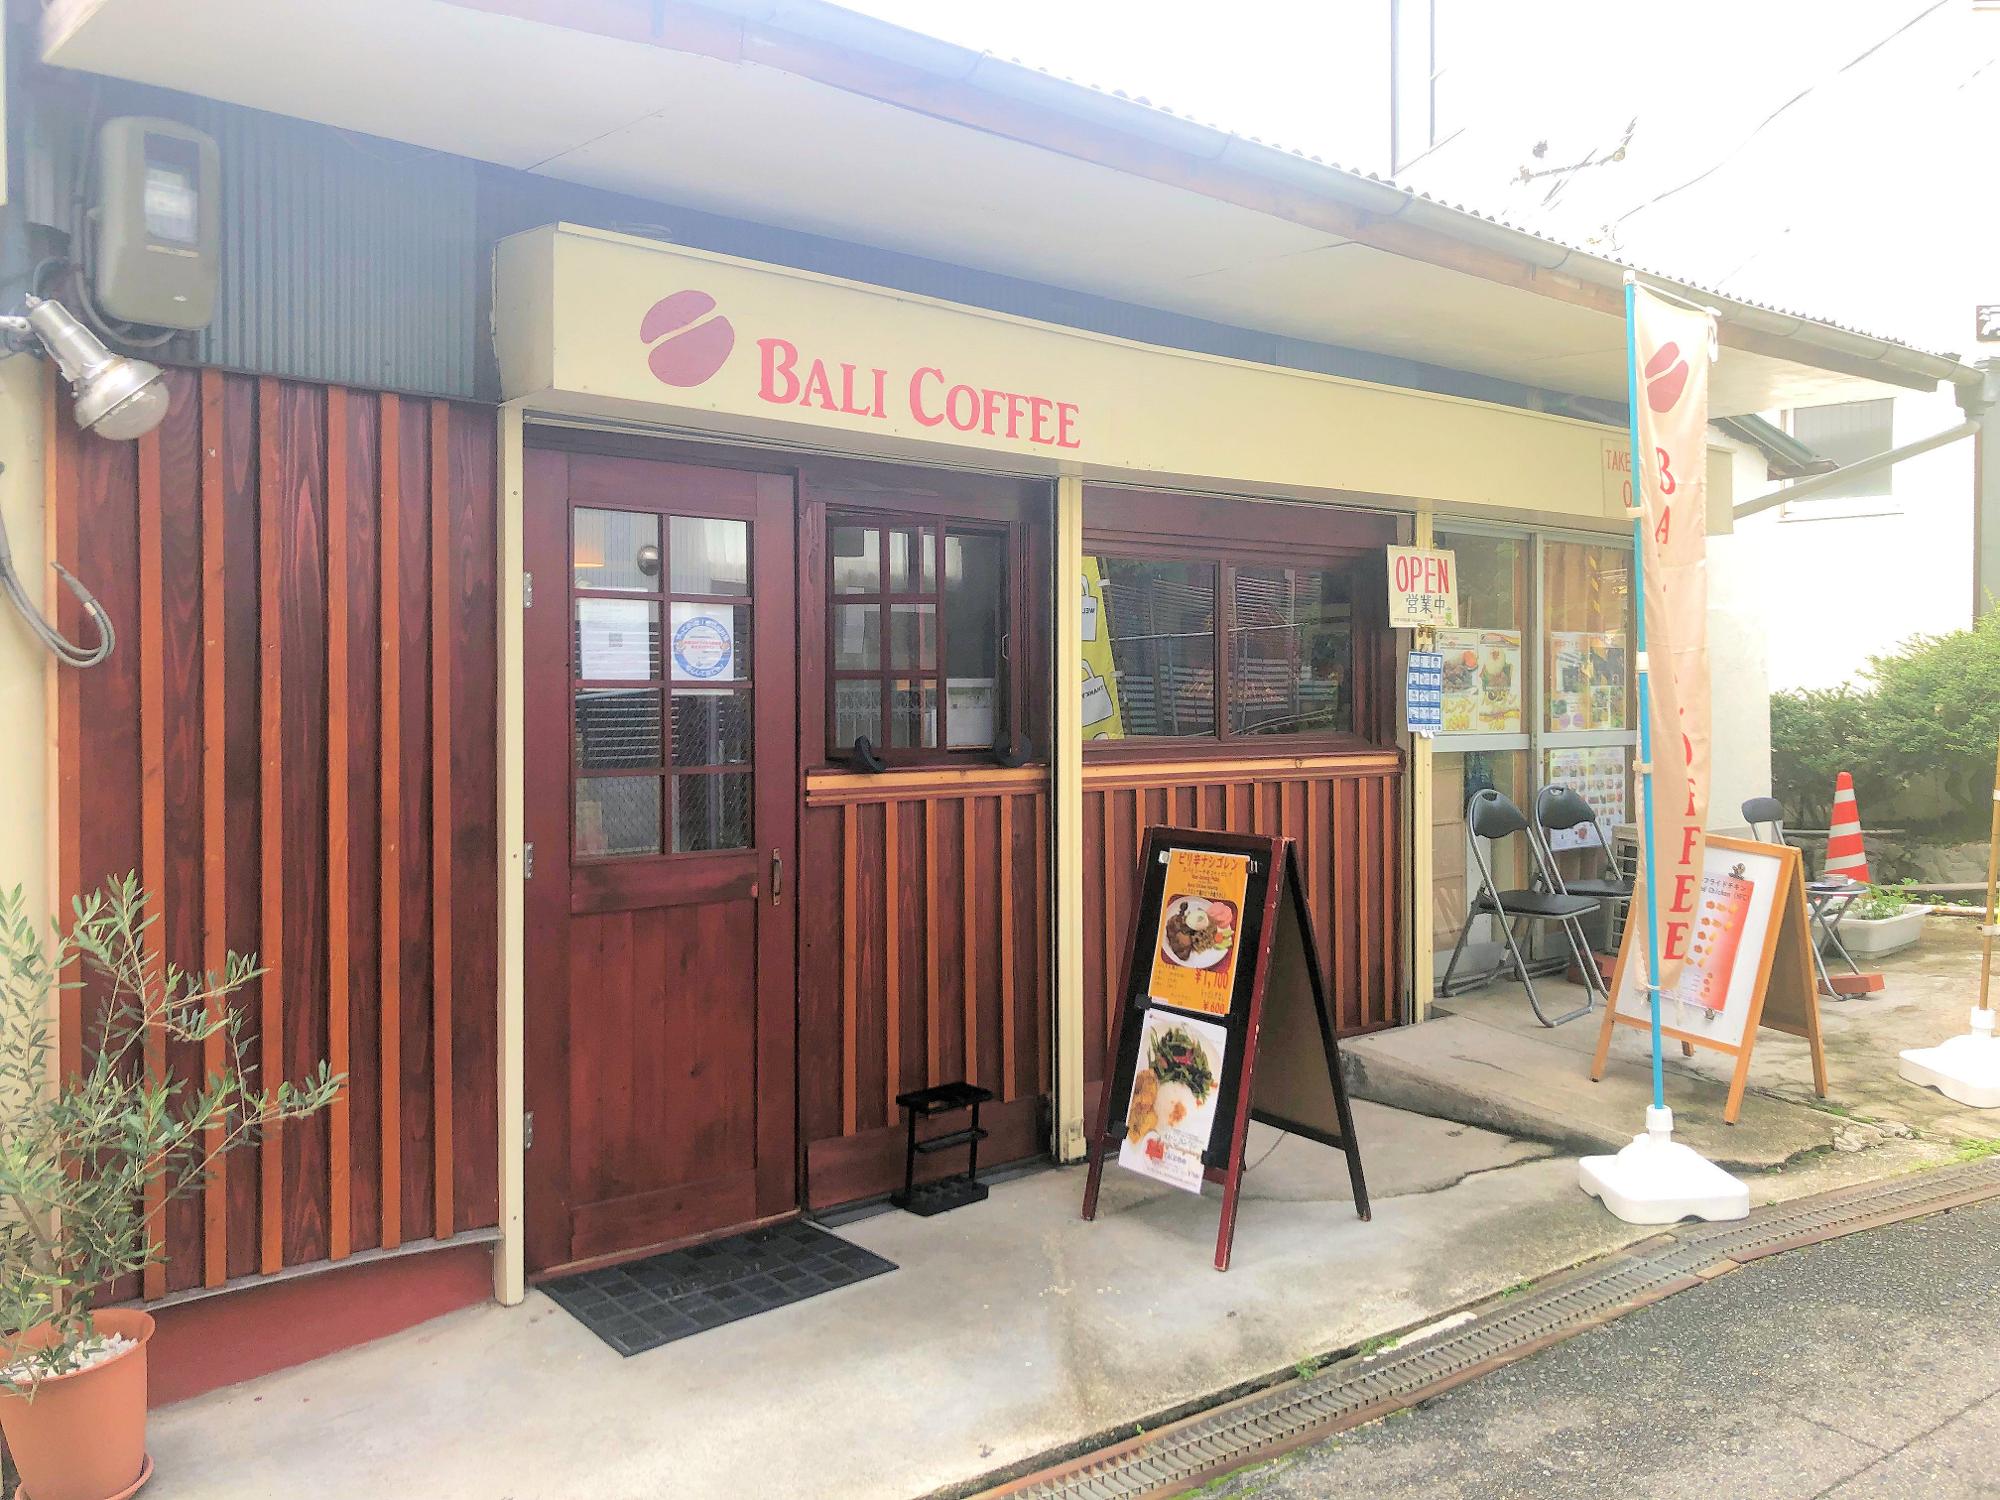 河内長野駅前にあるバリコーヒーさんも、キッチンカーで出店されます